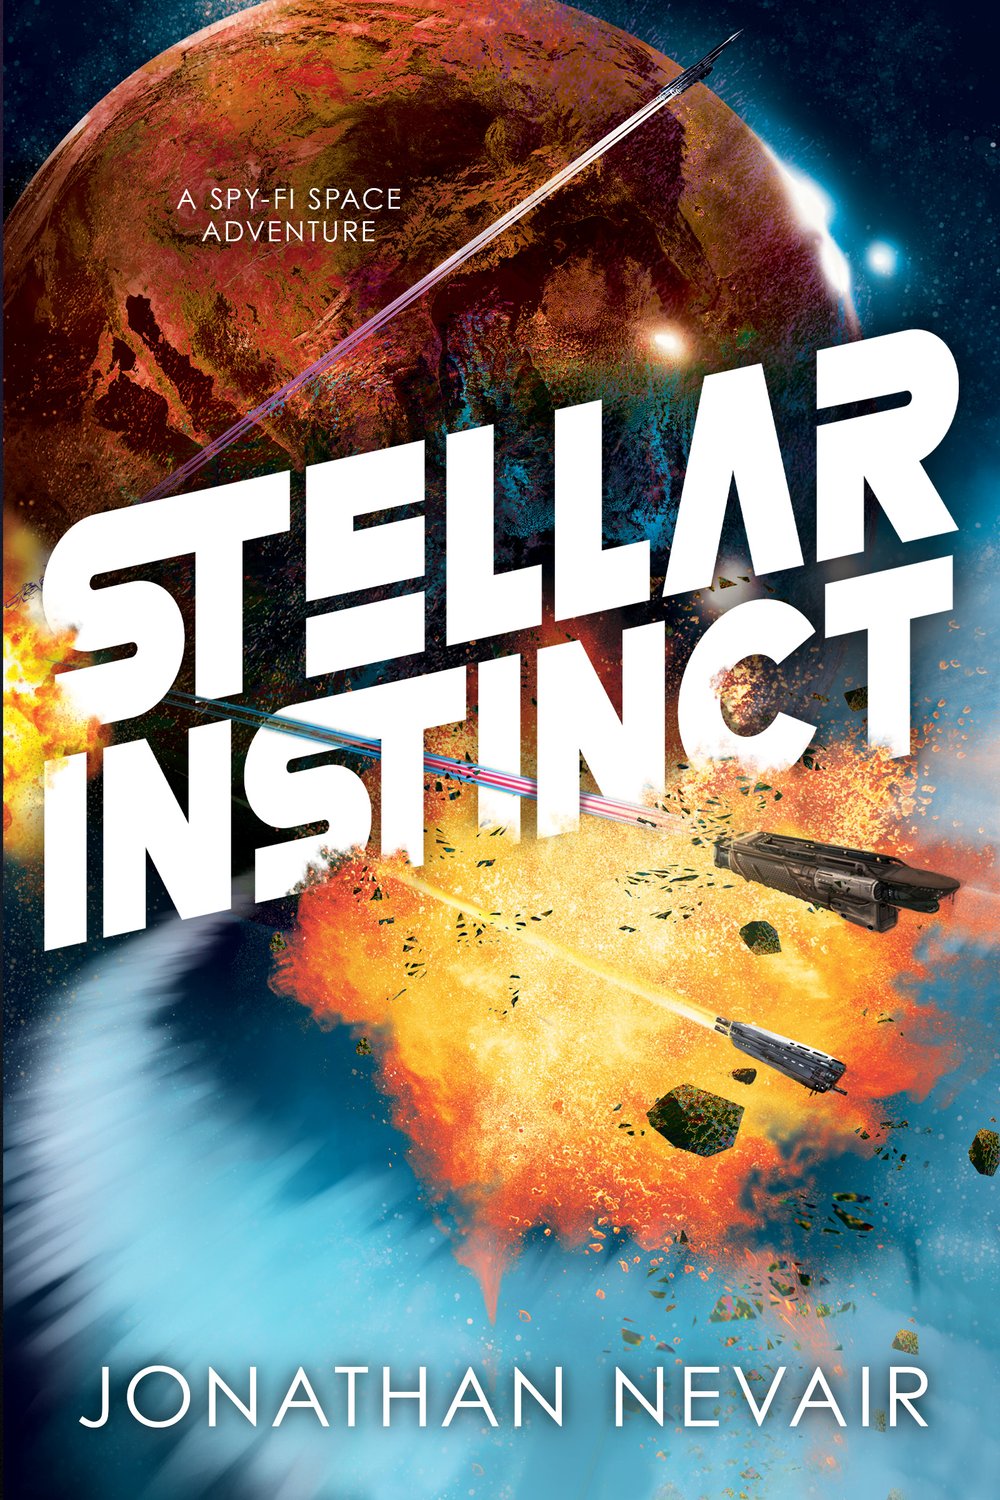 Cover - Stellar Instinct.jpg